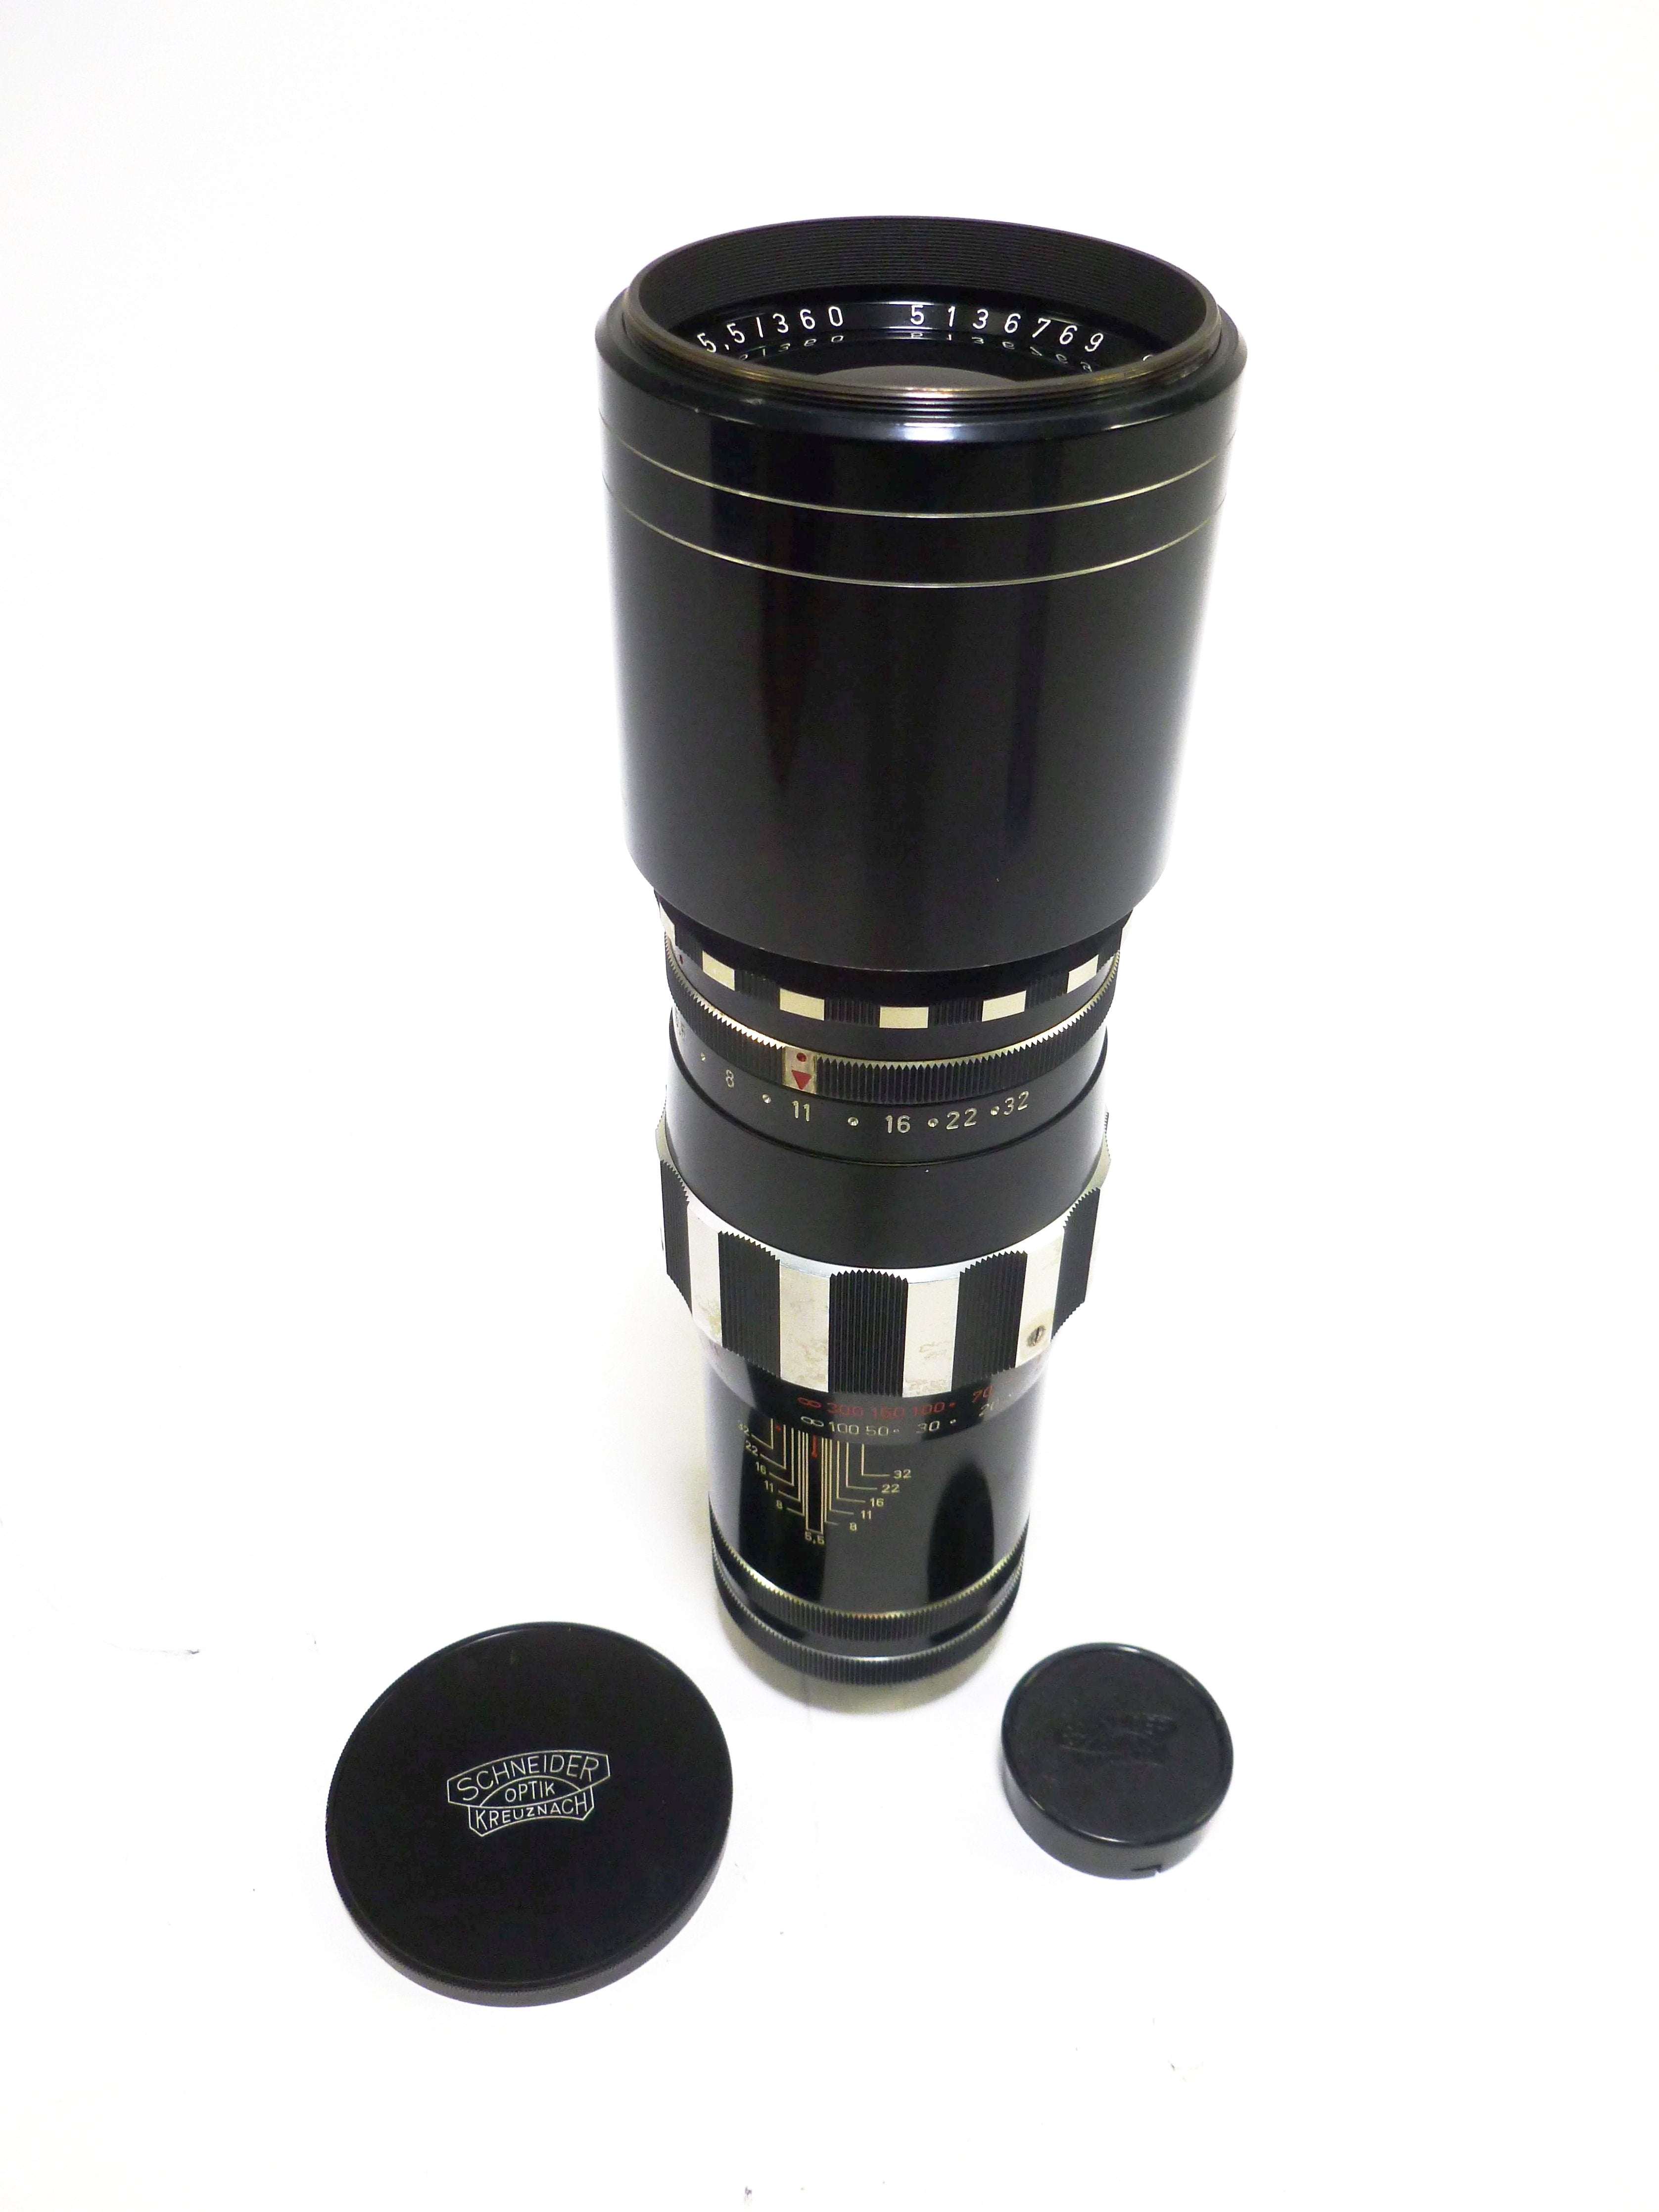 Schneider-Kreuznach Tele-Xenar 360mm f/5.5 Lens for Exakta Mount 